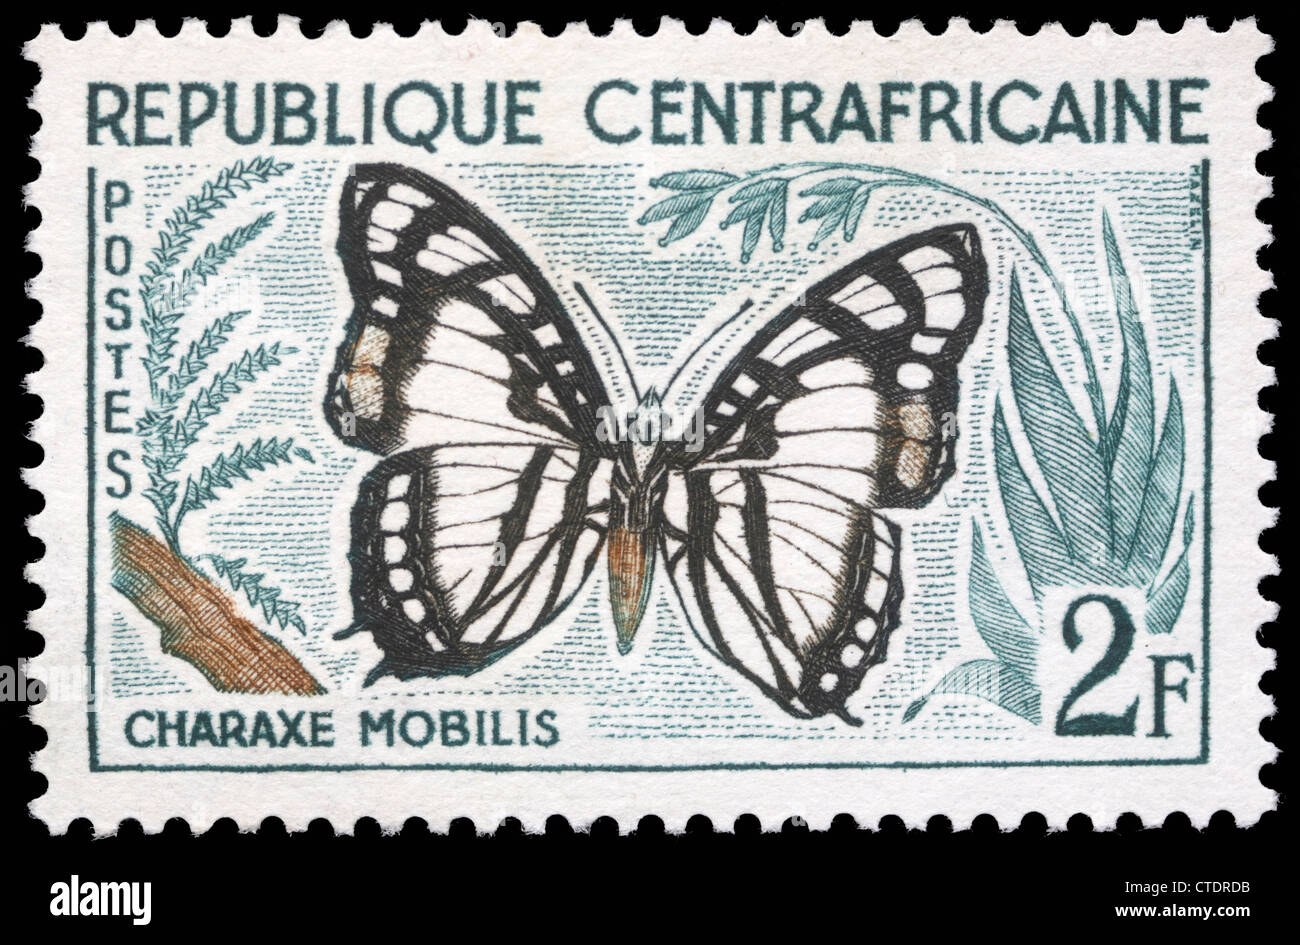 CENTRAL AFRICAN REPUBLIC - CIRCA 1960:A stamp printed in Central African Republic shows a butterfly, Charaxe Mobilis, circa 1960 Stock Photo